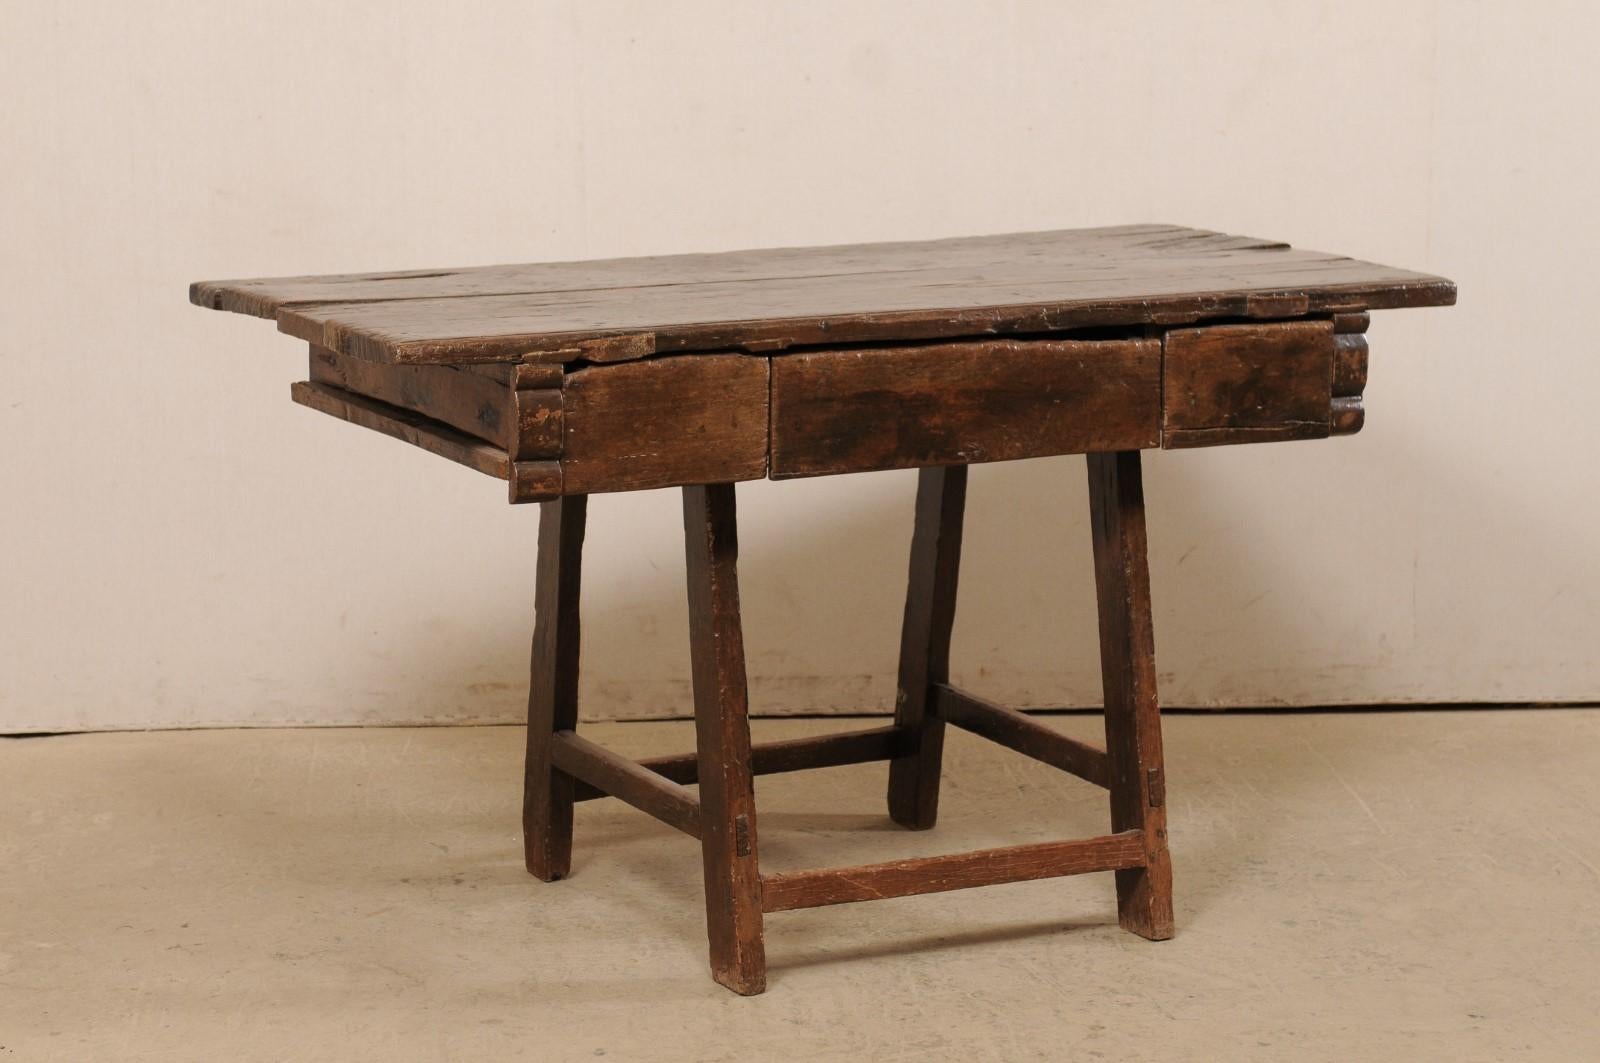 Ein exquisiter Tisch aus brasilianischem Perobaholz mit drei Schubladen aus dem 18. Jahrhundert. Dieser antike Tisch aus Brasilien ist aus Peroba-Holz gefertigt, einem tropischen, in Brasilien heimischen Hartholz, das 35 % härter als Eiche ist. Die